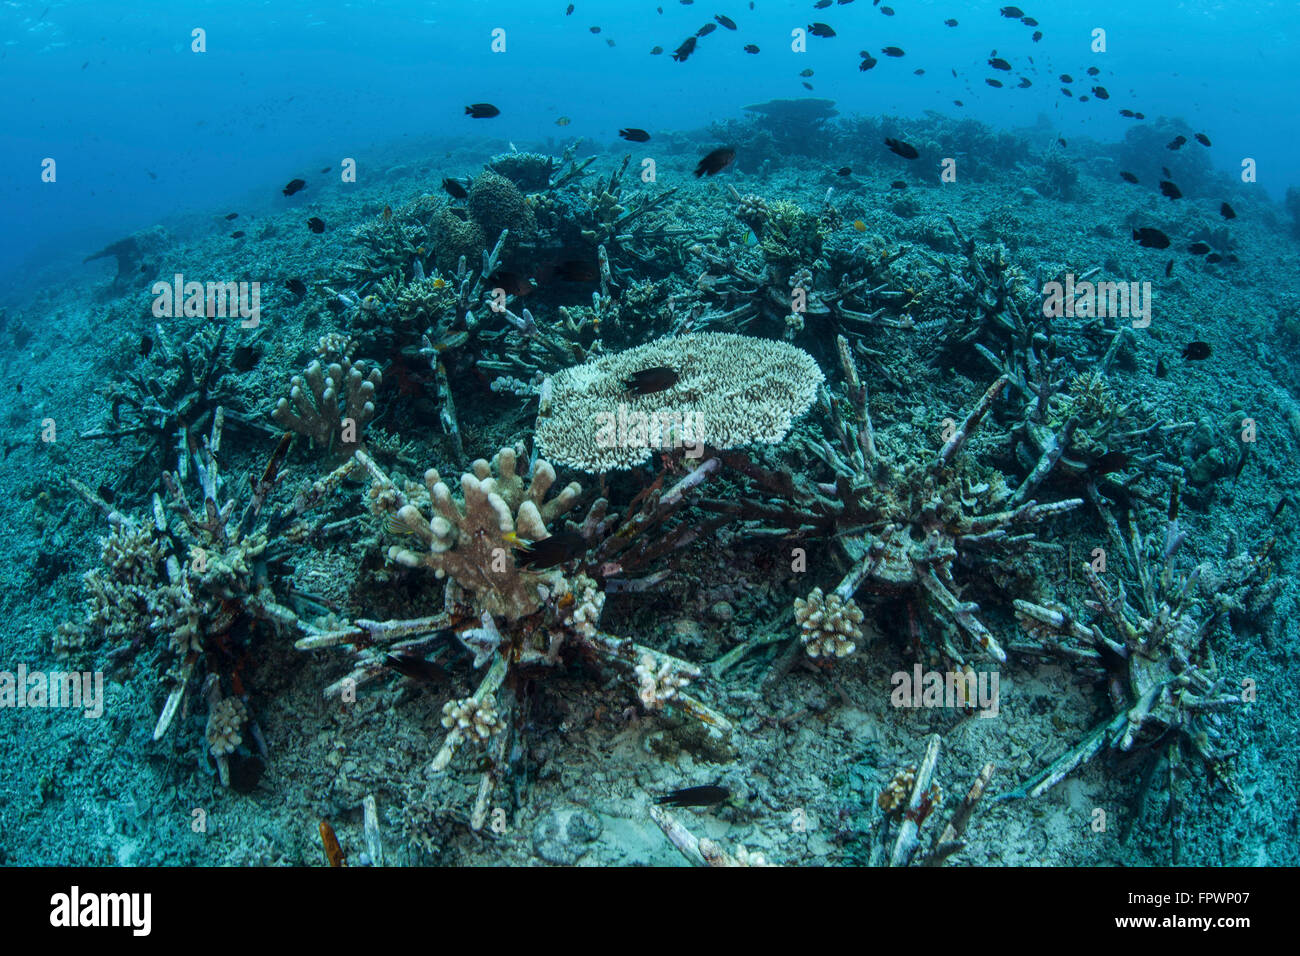 Nuova tabella coralli crescono su un reef artificiale che è destinato a ripristinare l'originale biodiversità della barriera corallina vicino all' isola di Sulawesi, in Foto Stock